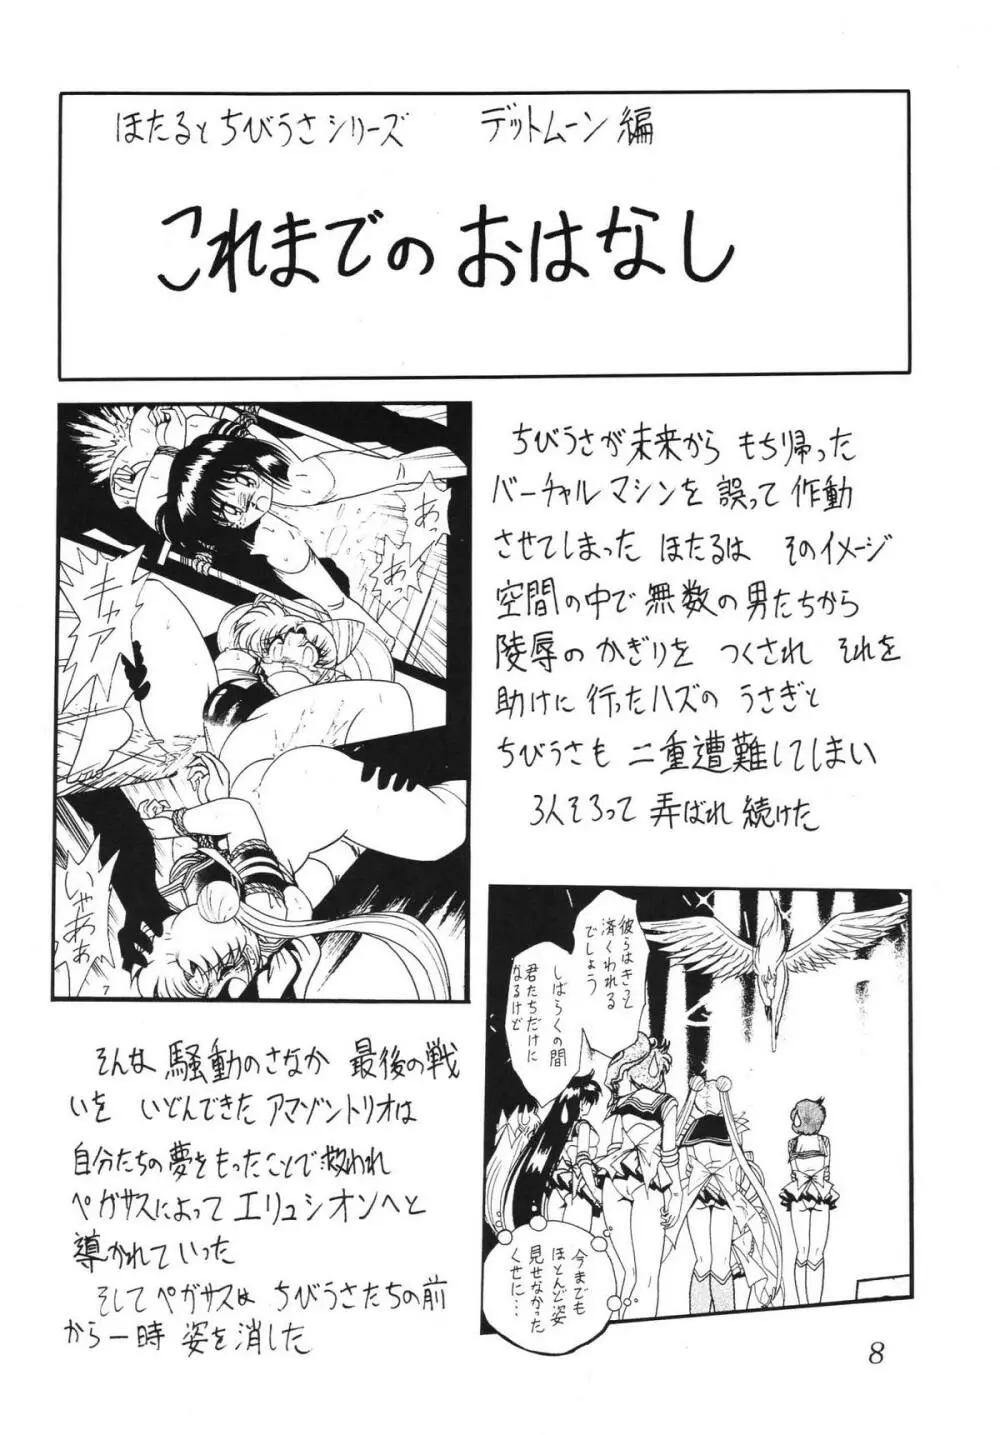 サイレント・サターン SS vol.5 8ページ